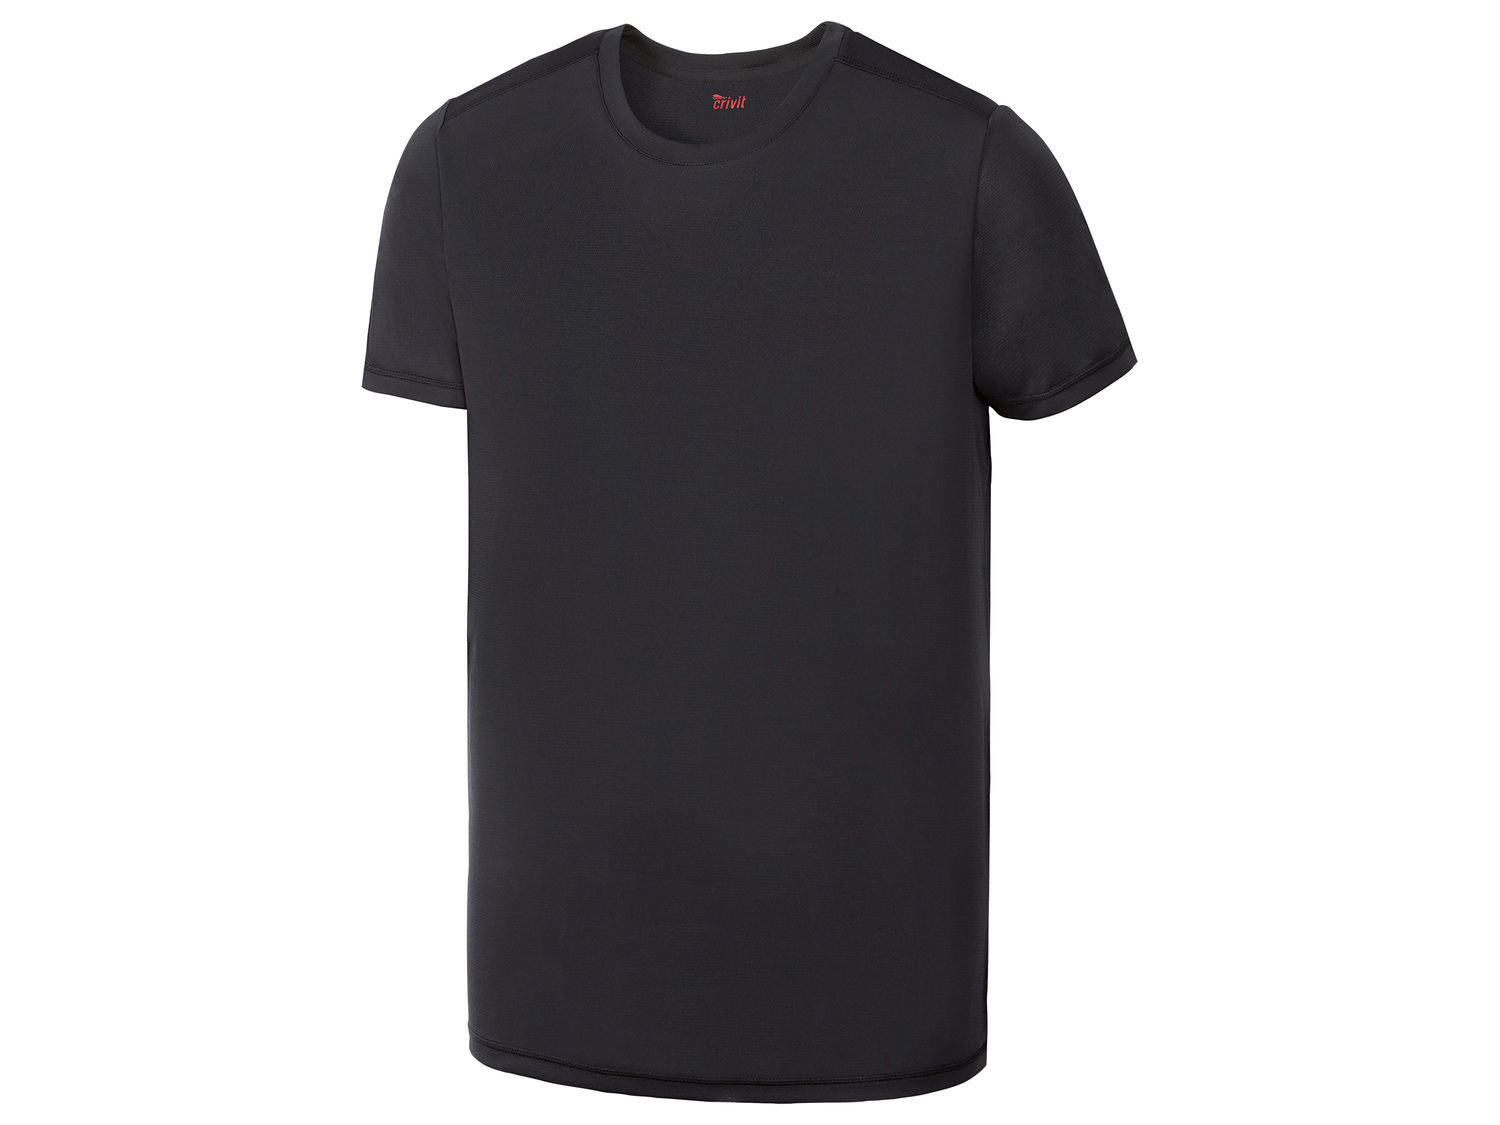 T-shirt technique , le prix 3.99 &#8364; 
- Du S au L selon mod&egrave;le.
- ...